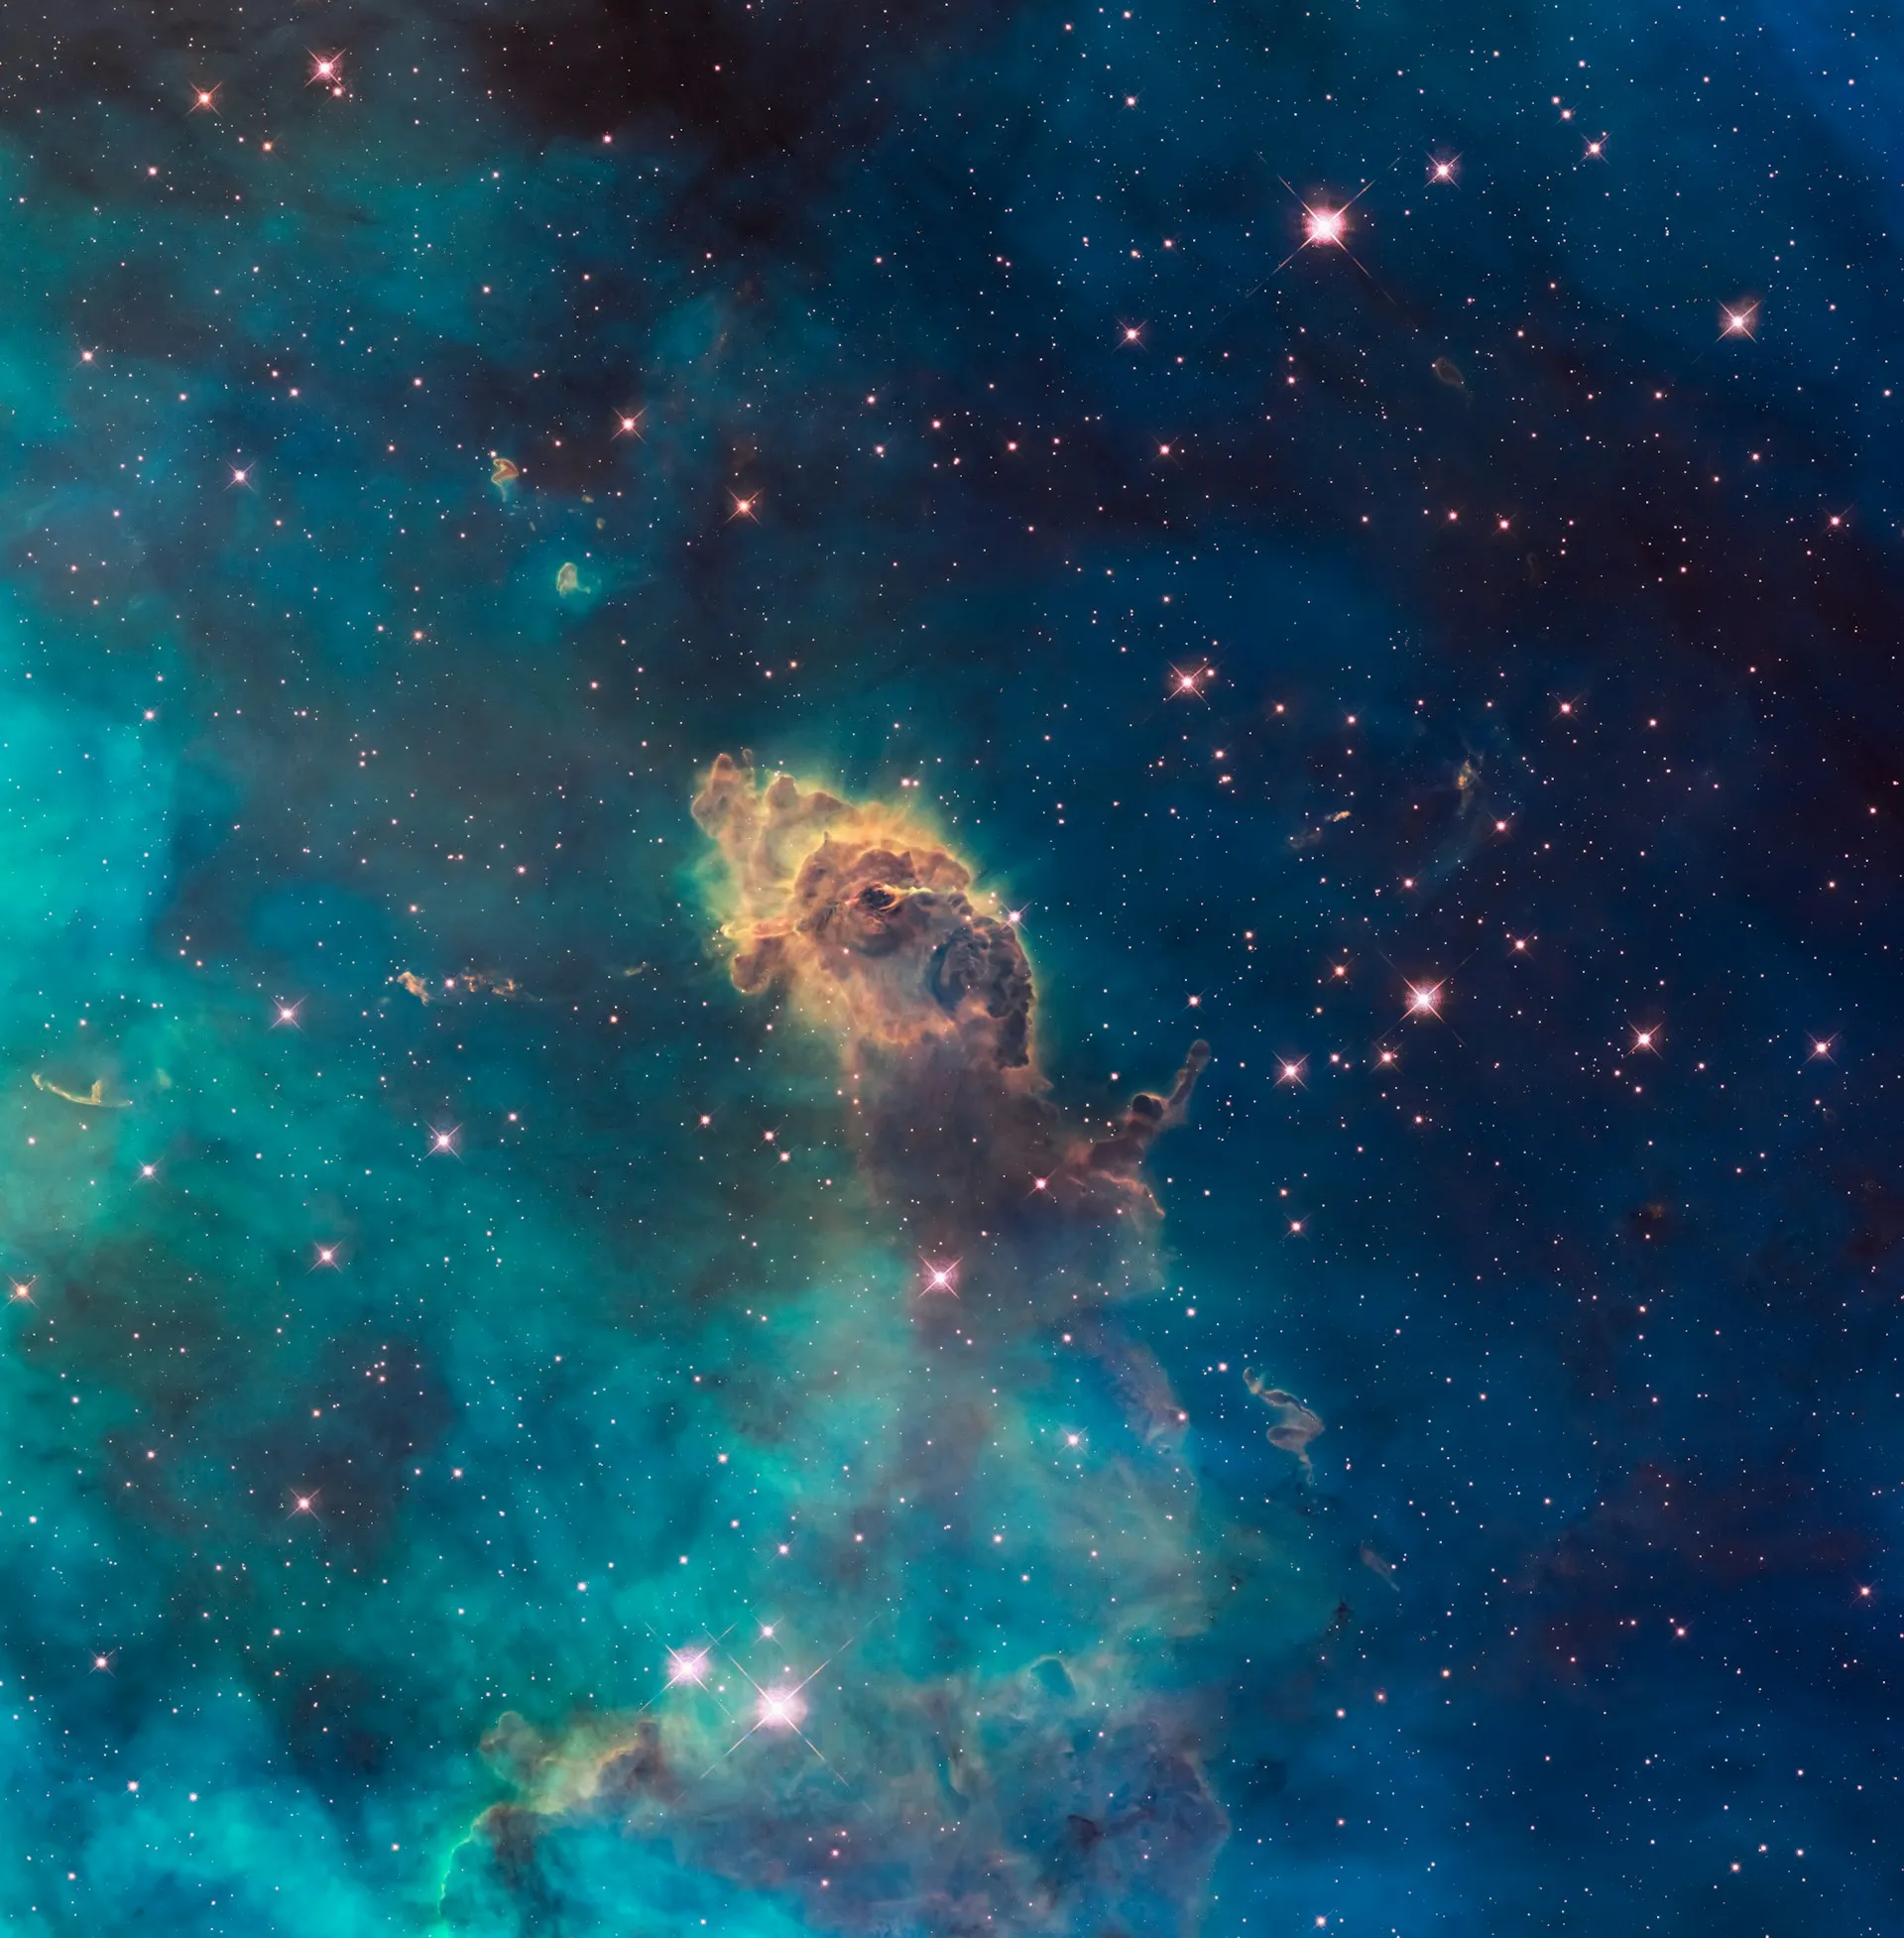 Grafik von NASA Hubble Space Telescope - https://unsplash.com/de/@hubblespacetelescope